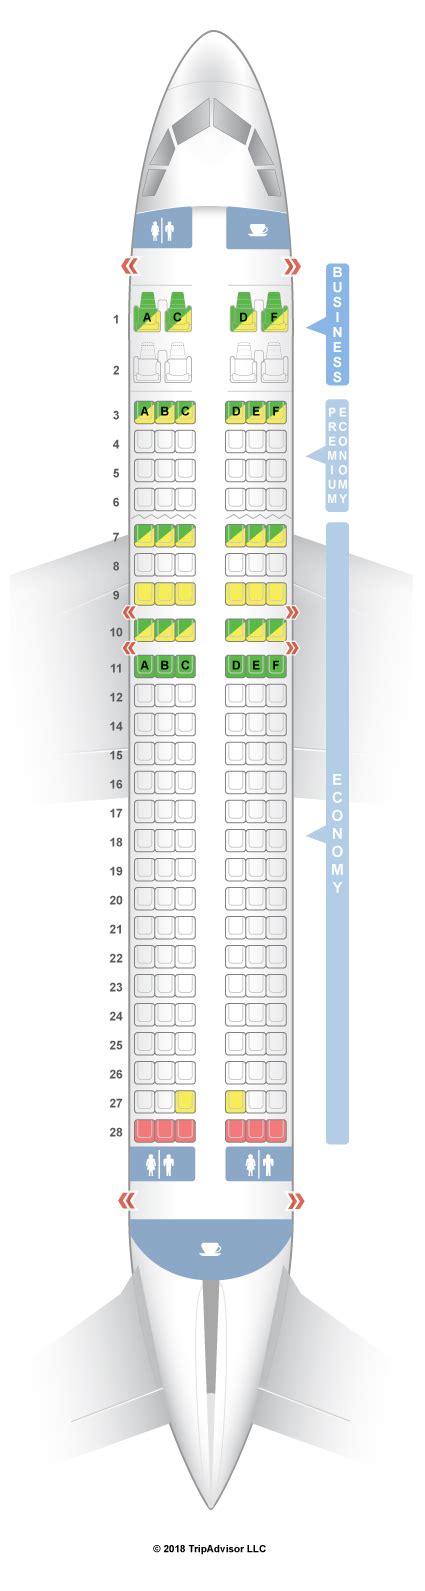 Seatguru Seat Map Vistara Airbus A320ceo And Neo 320